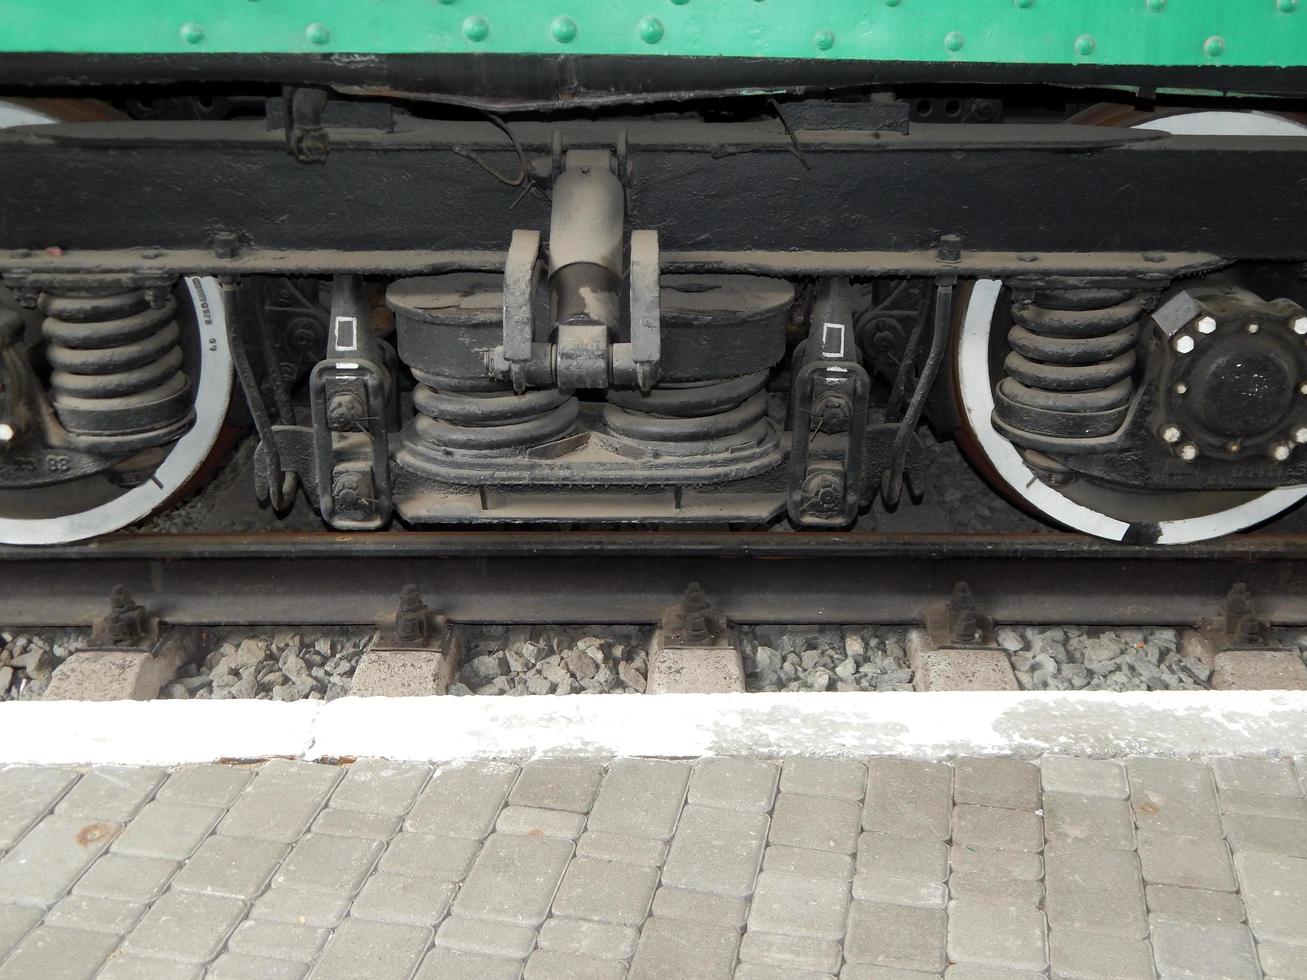 détails de transport ferroviaire de locomotive, wagon photo